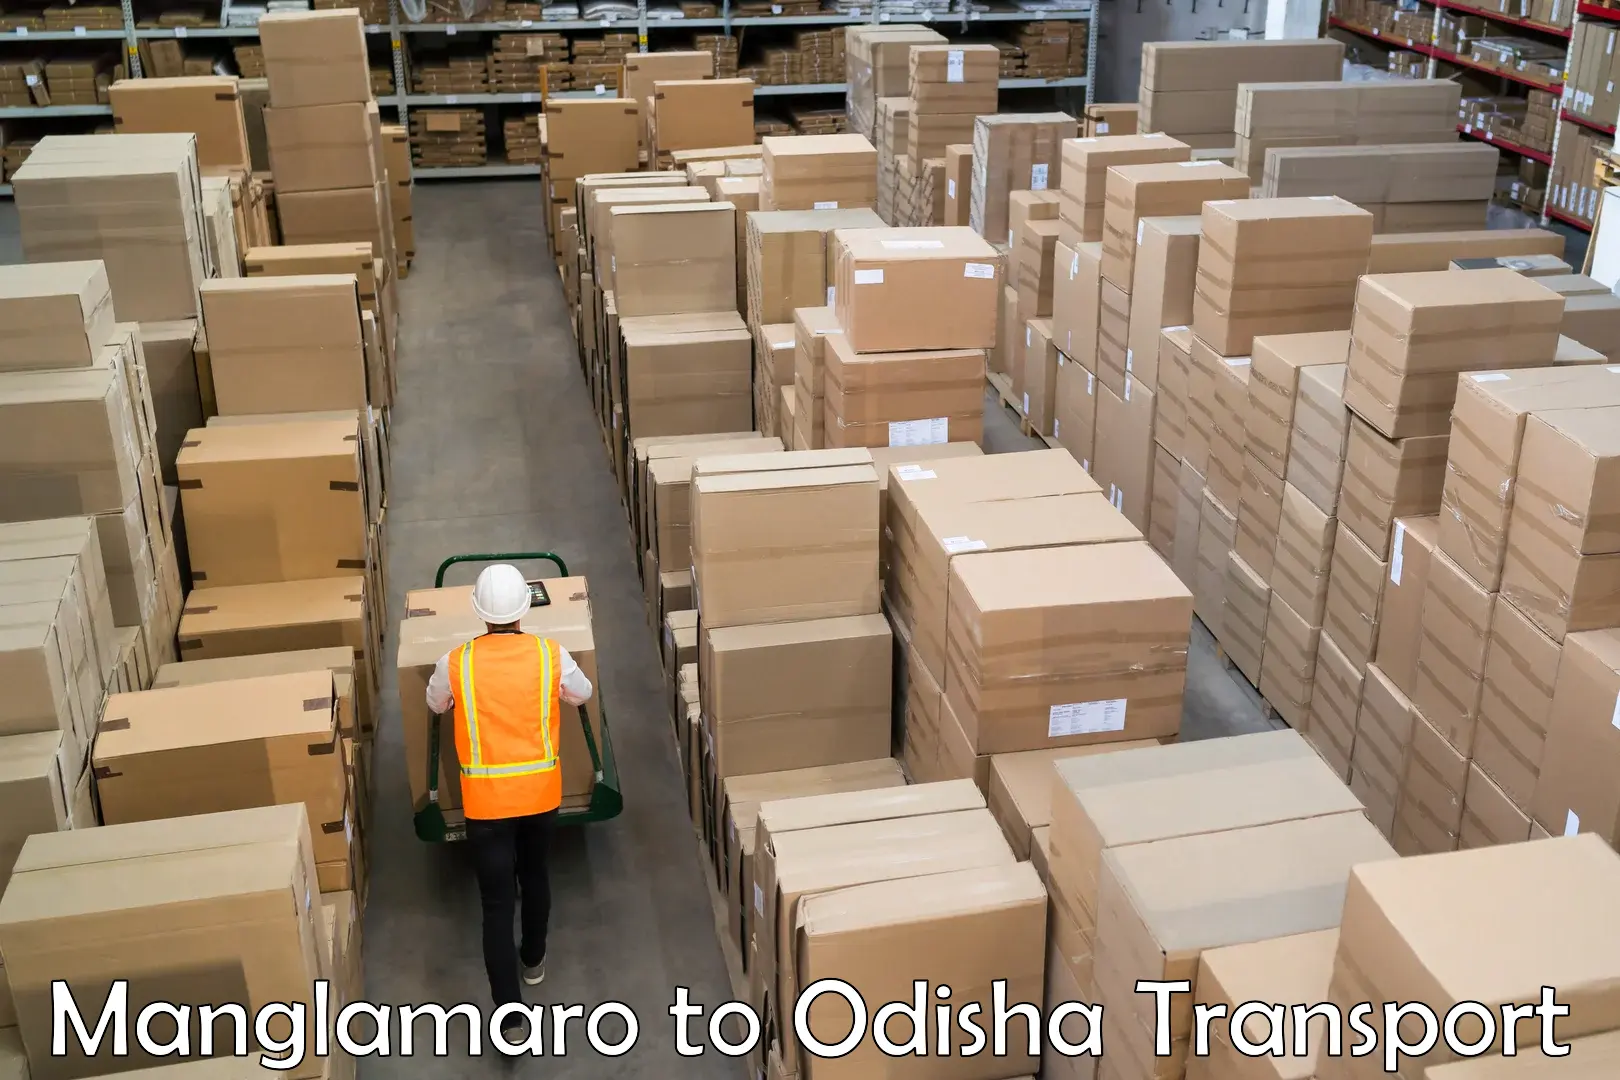 Cargo transport services Manglamaro to Binka